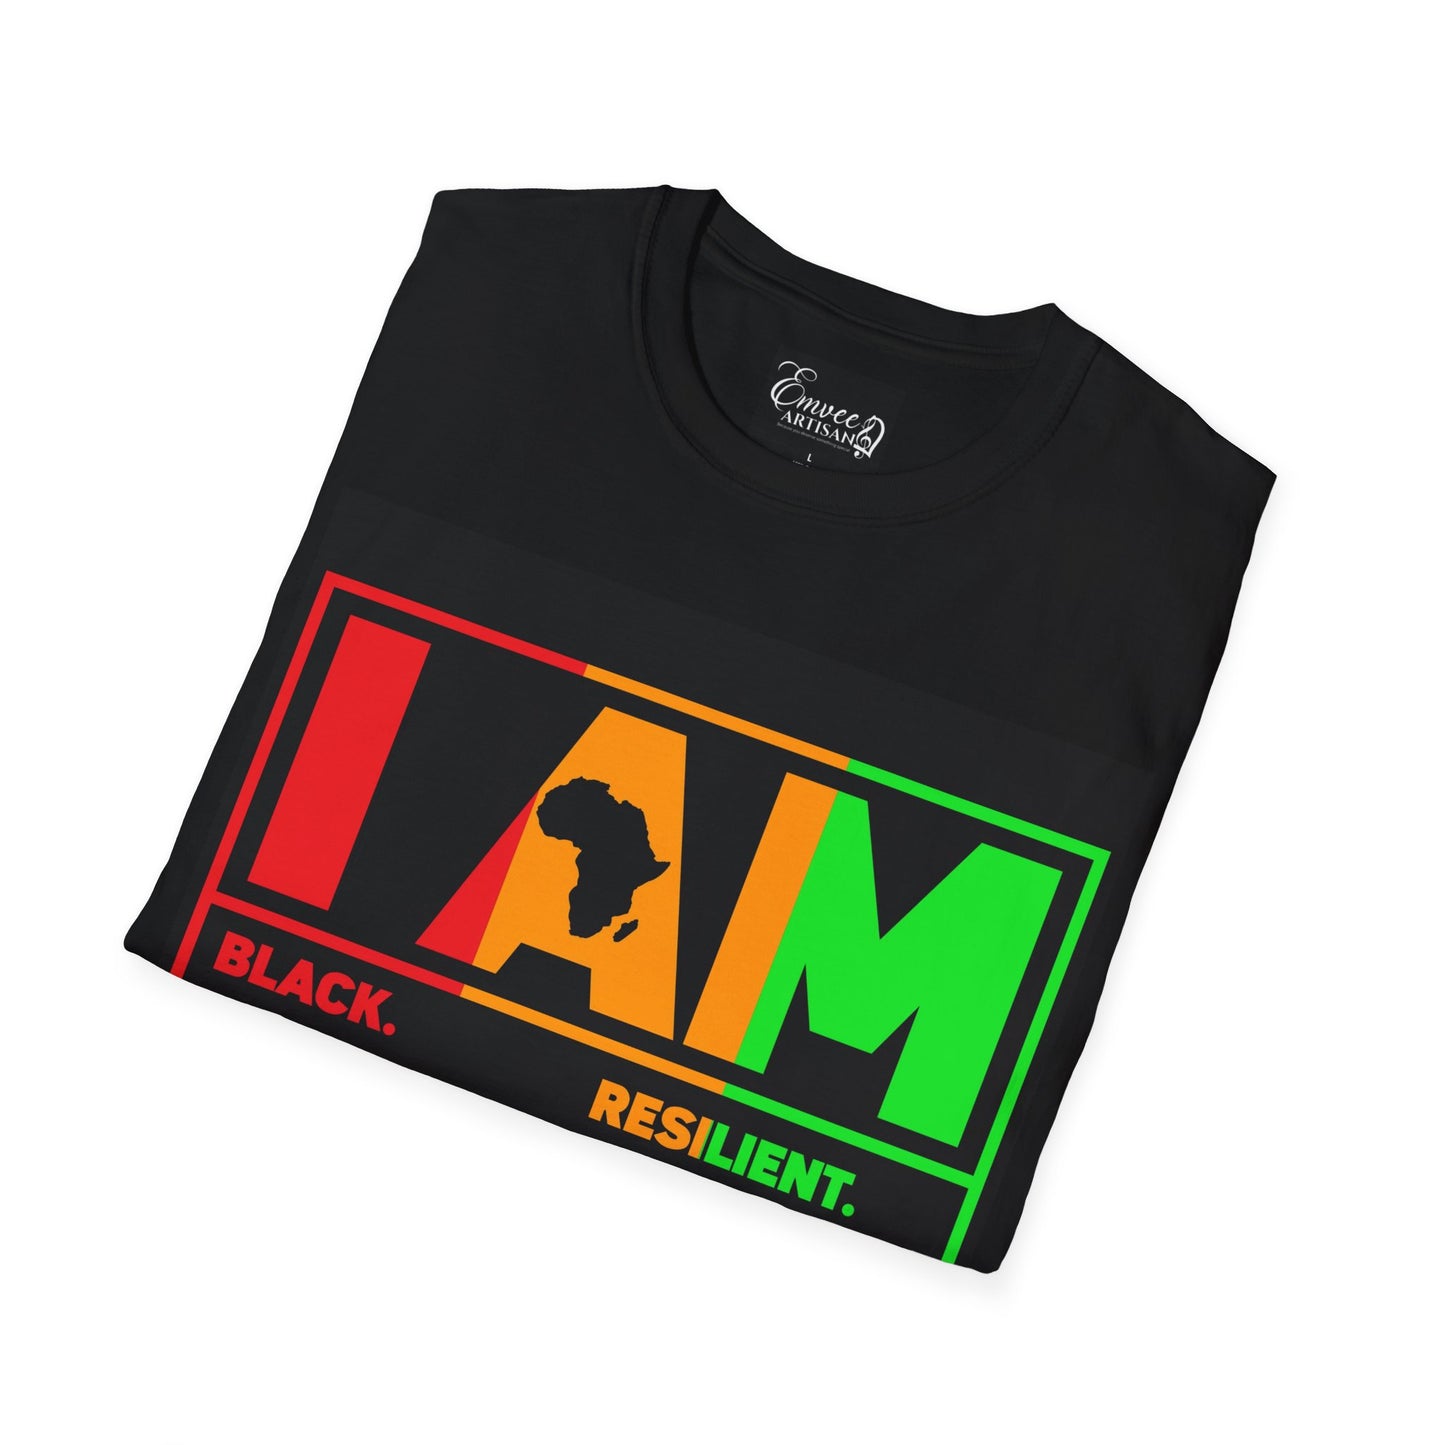 I Am (Unisex Softstyle T-Shirt)